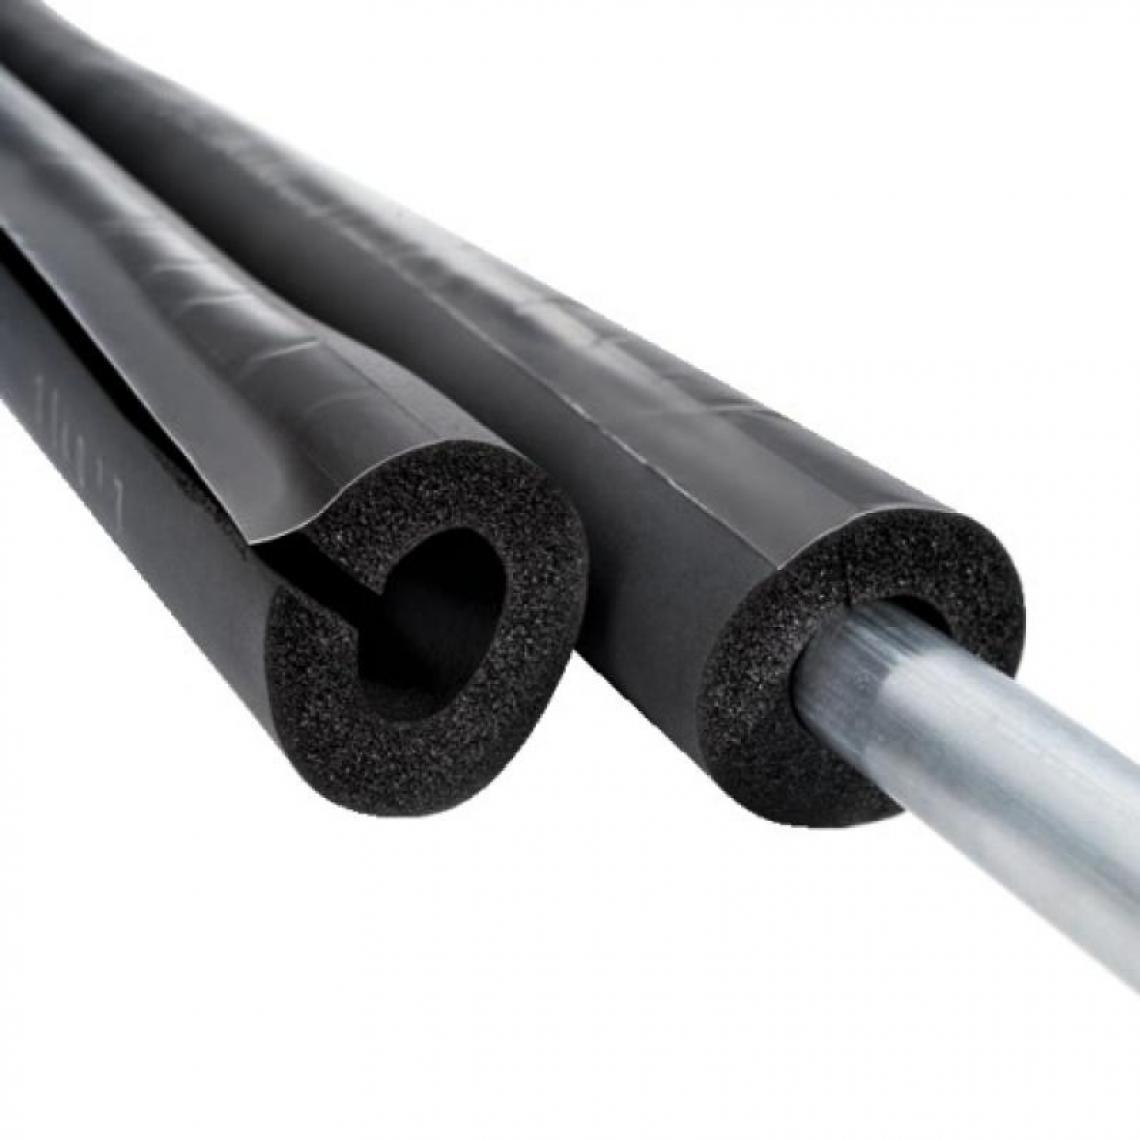 NMC - Tube isolant fendu, à recouvrement adhésif, épaisseur 32 mm, longueur 2 m, pour tuyaux diamètre 48 - Coudes et raccords PVC